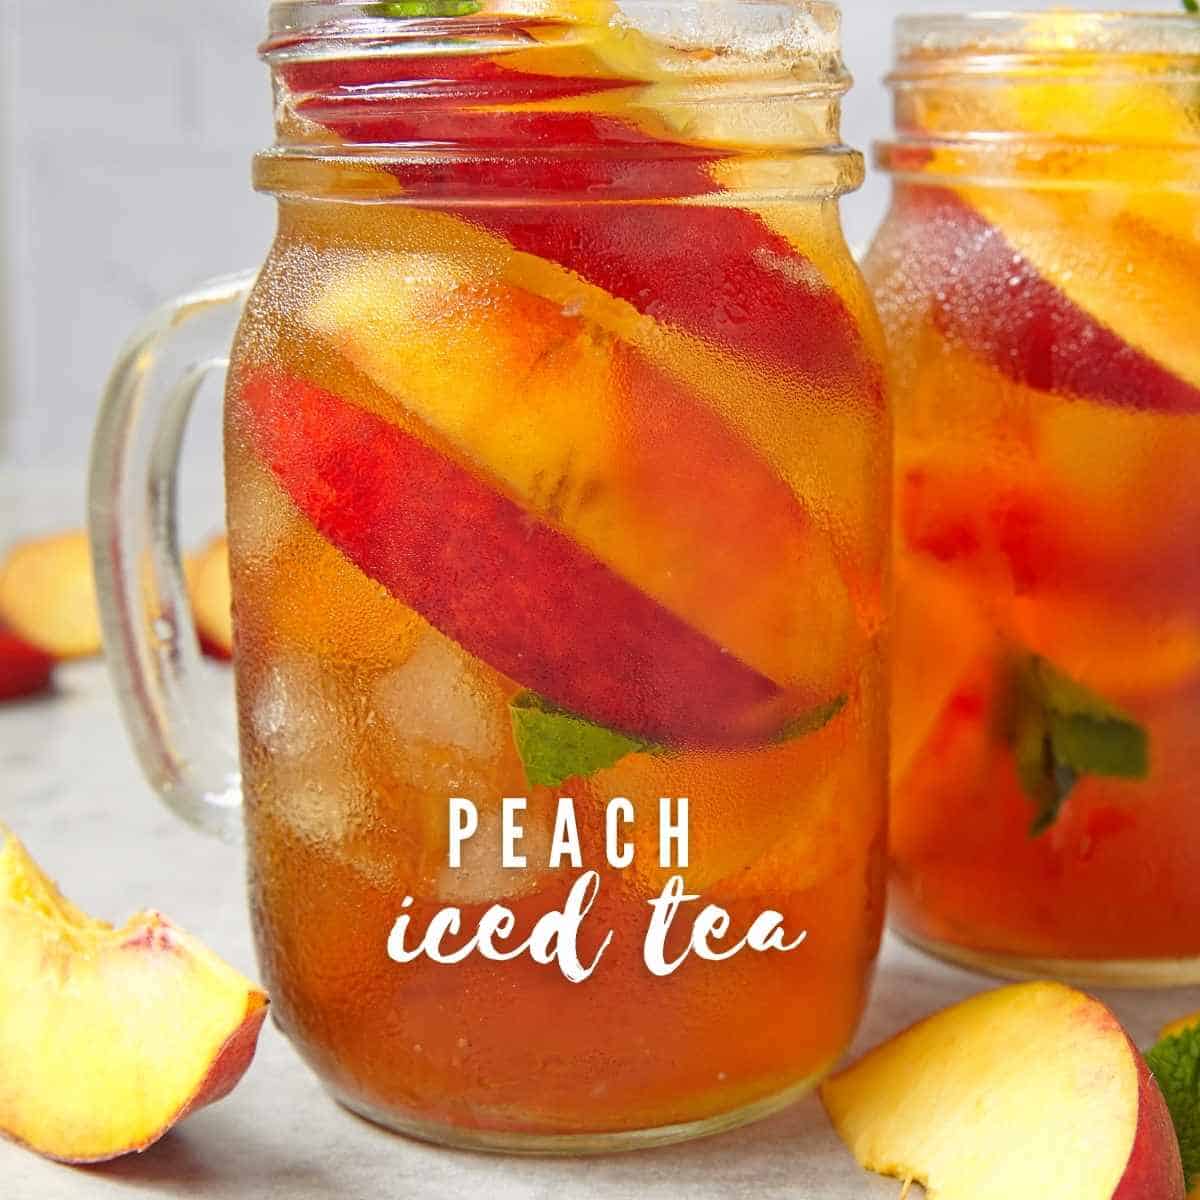 https://thehappierhomemaker.com/wp-content/uploads/2014/08/peach-iced-tea-1.jpg